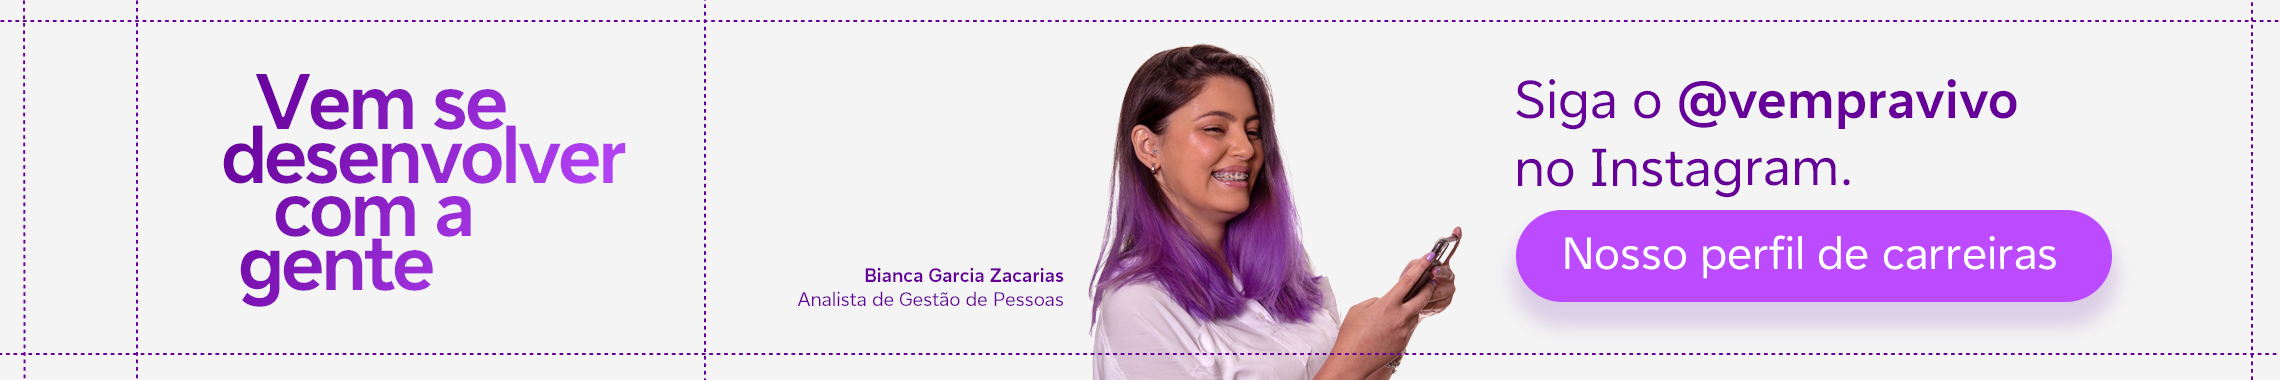 banner com a fotogtafia de uma mulher jovem com cabelos roxos interagindo com o celular e a frase siga o @vempravivo no instagram